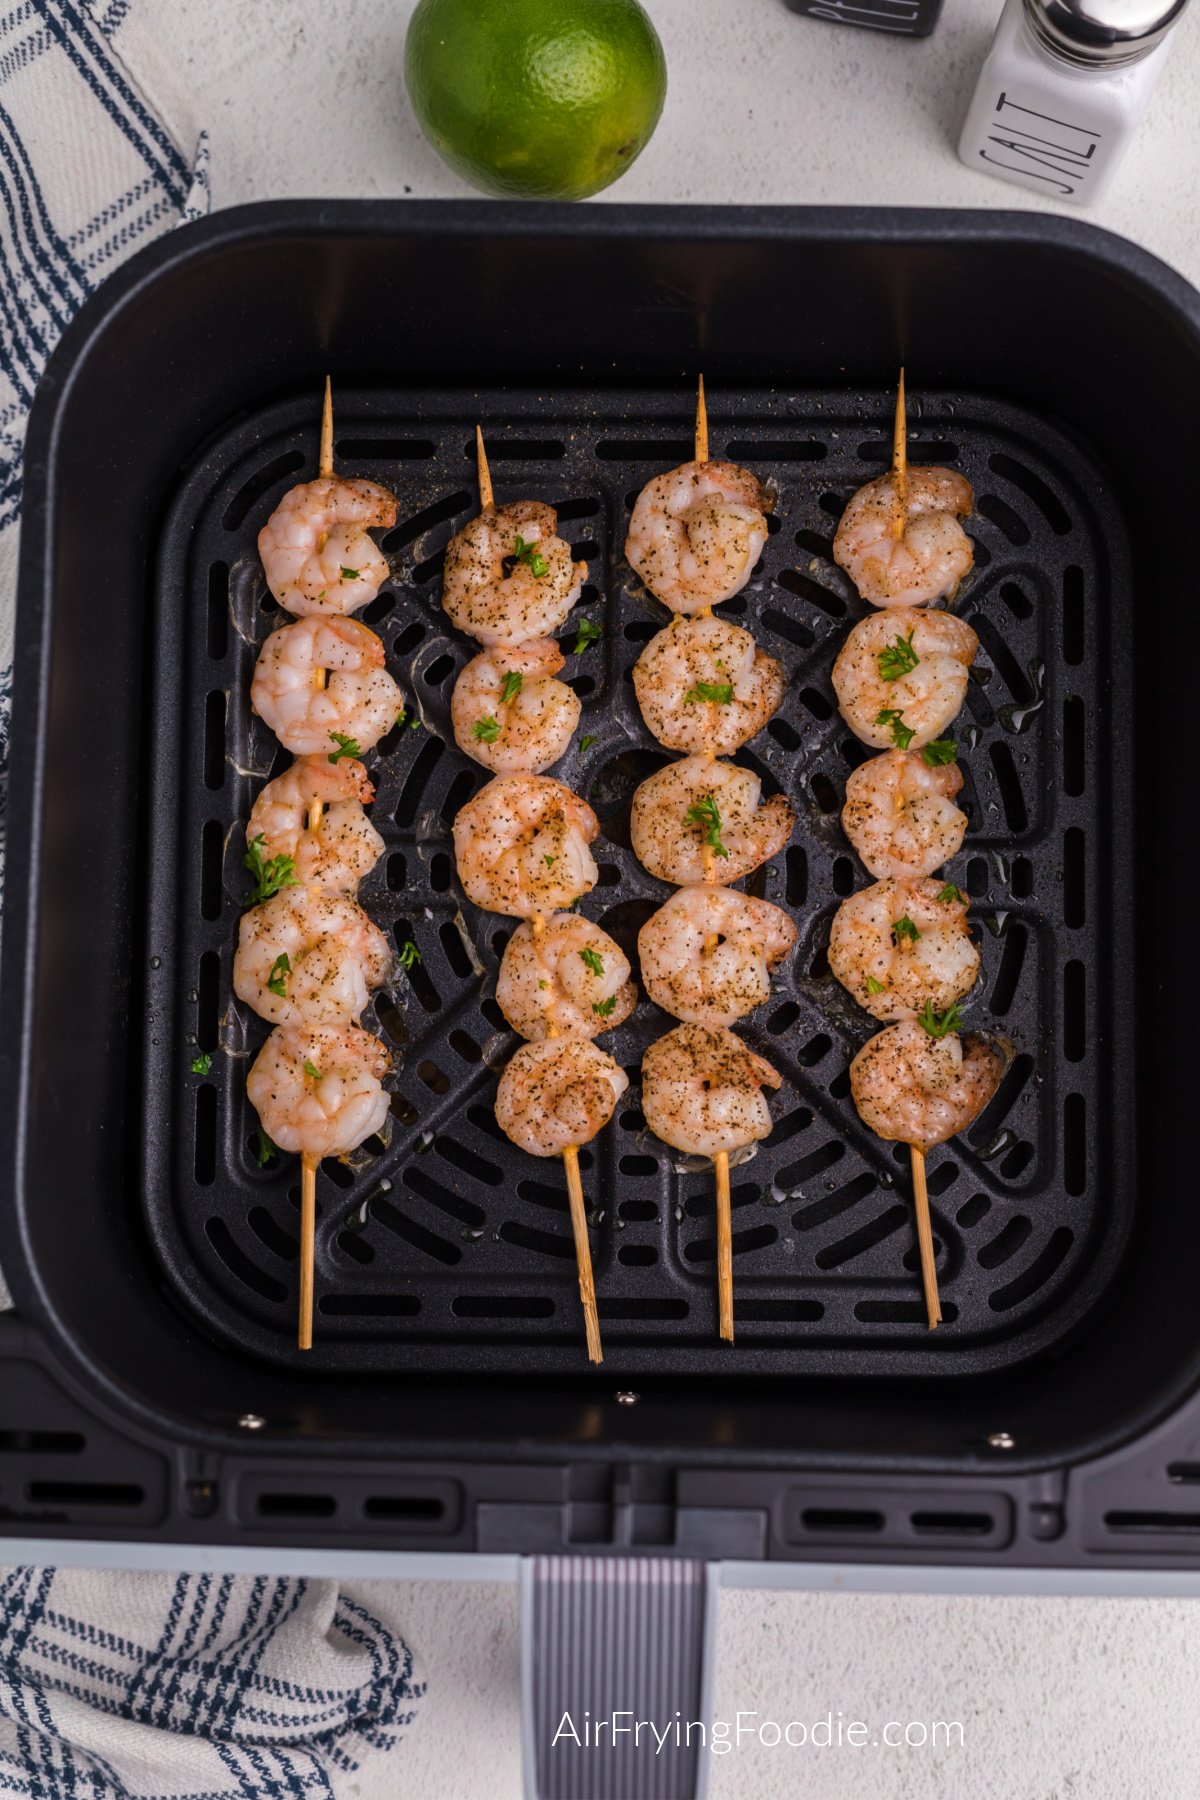 Air fried shrimp skewers in the air fryer basket.